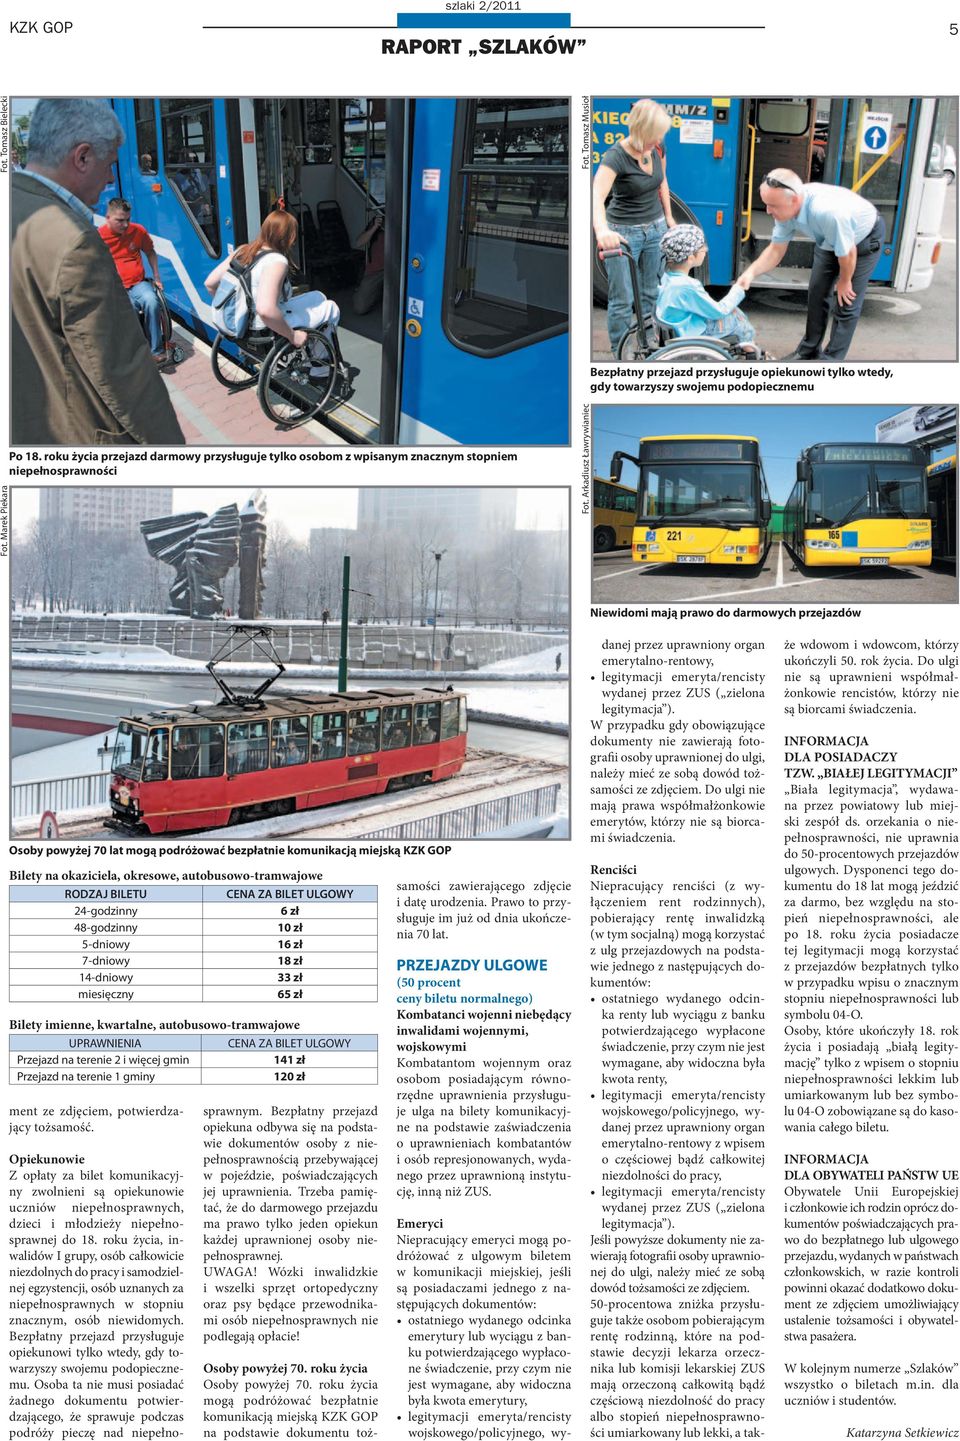 Arkadiusz Ławrywianiec Niewidomi mają prawo do darmowych przejazdów Osoby powyżej 70 lat mogą podróżować bezpłatnie komunikacją miejską KZK GOP Bilety na okaziciela, okresowe, autobusowo-tramwajowe